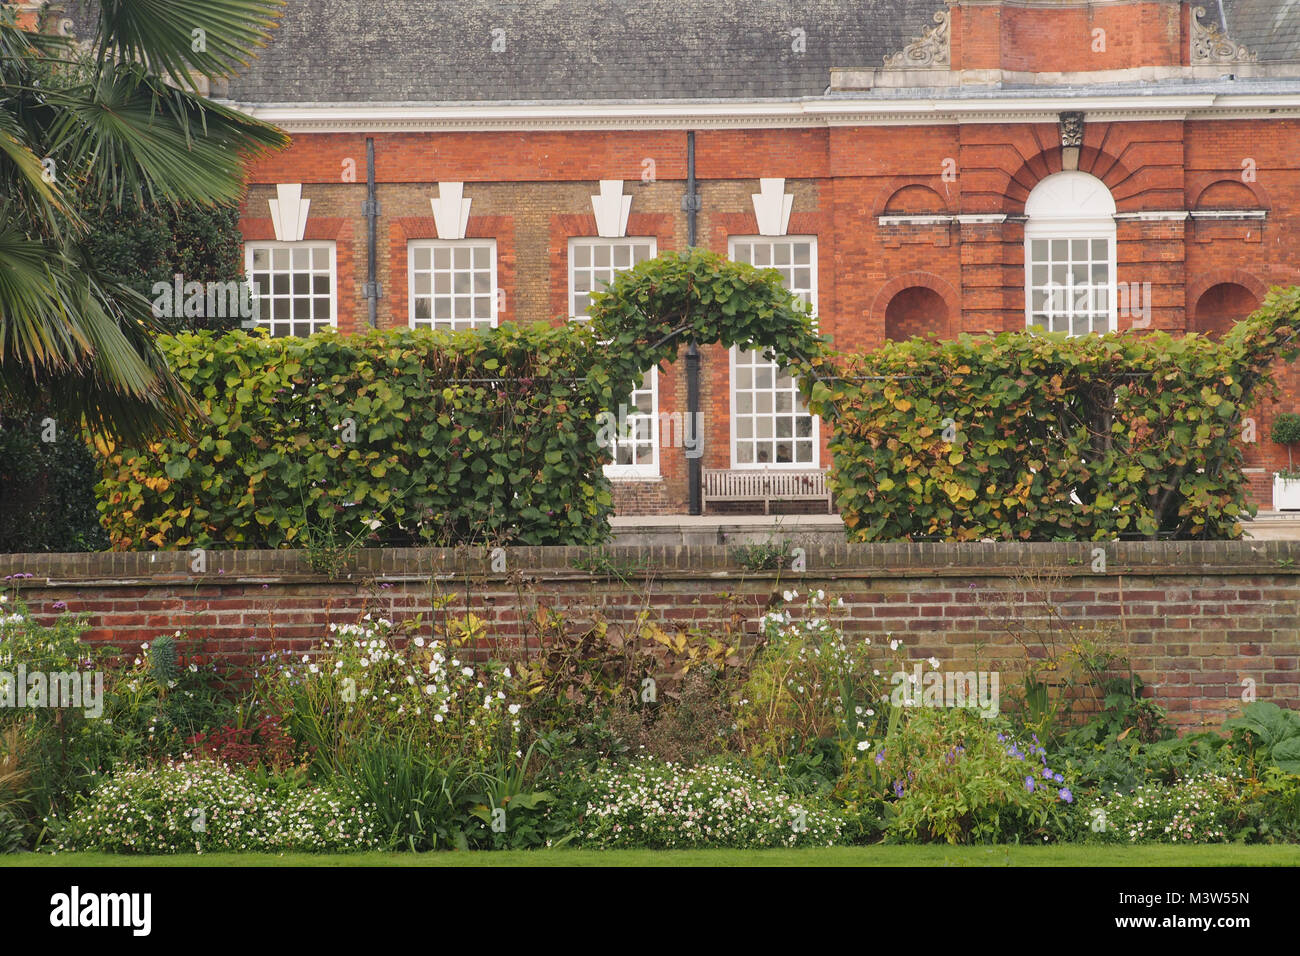 Una vista di una parte di Kensington Palace dal giardino sommerso con il muro del giardino e una formazione hedge archway Foto Stock